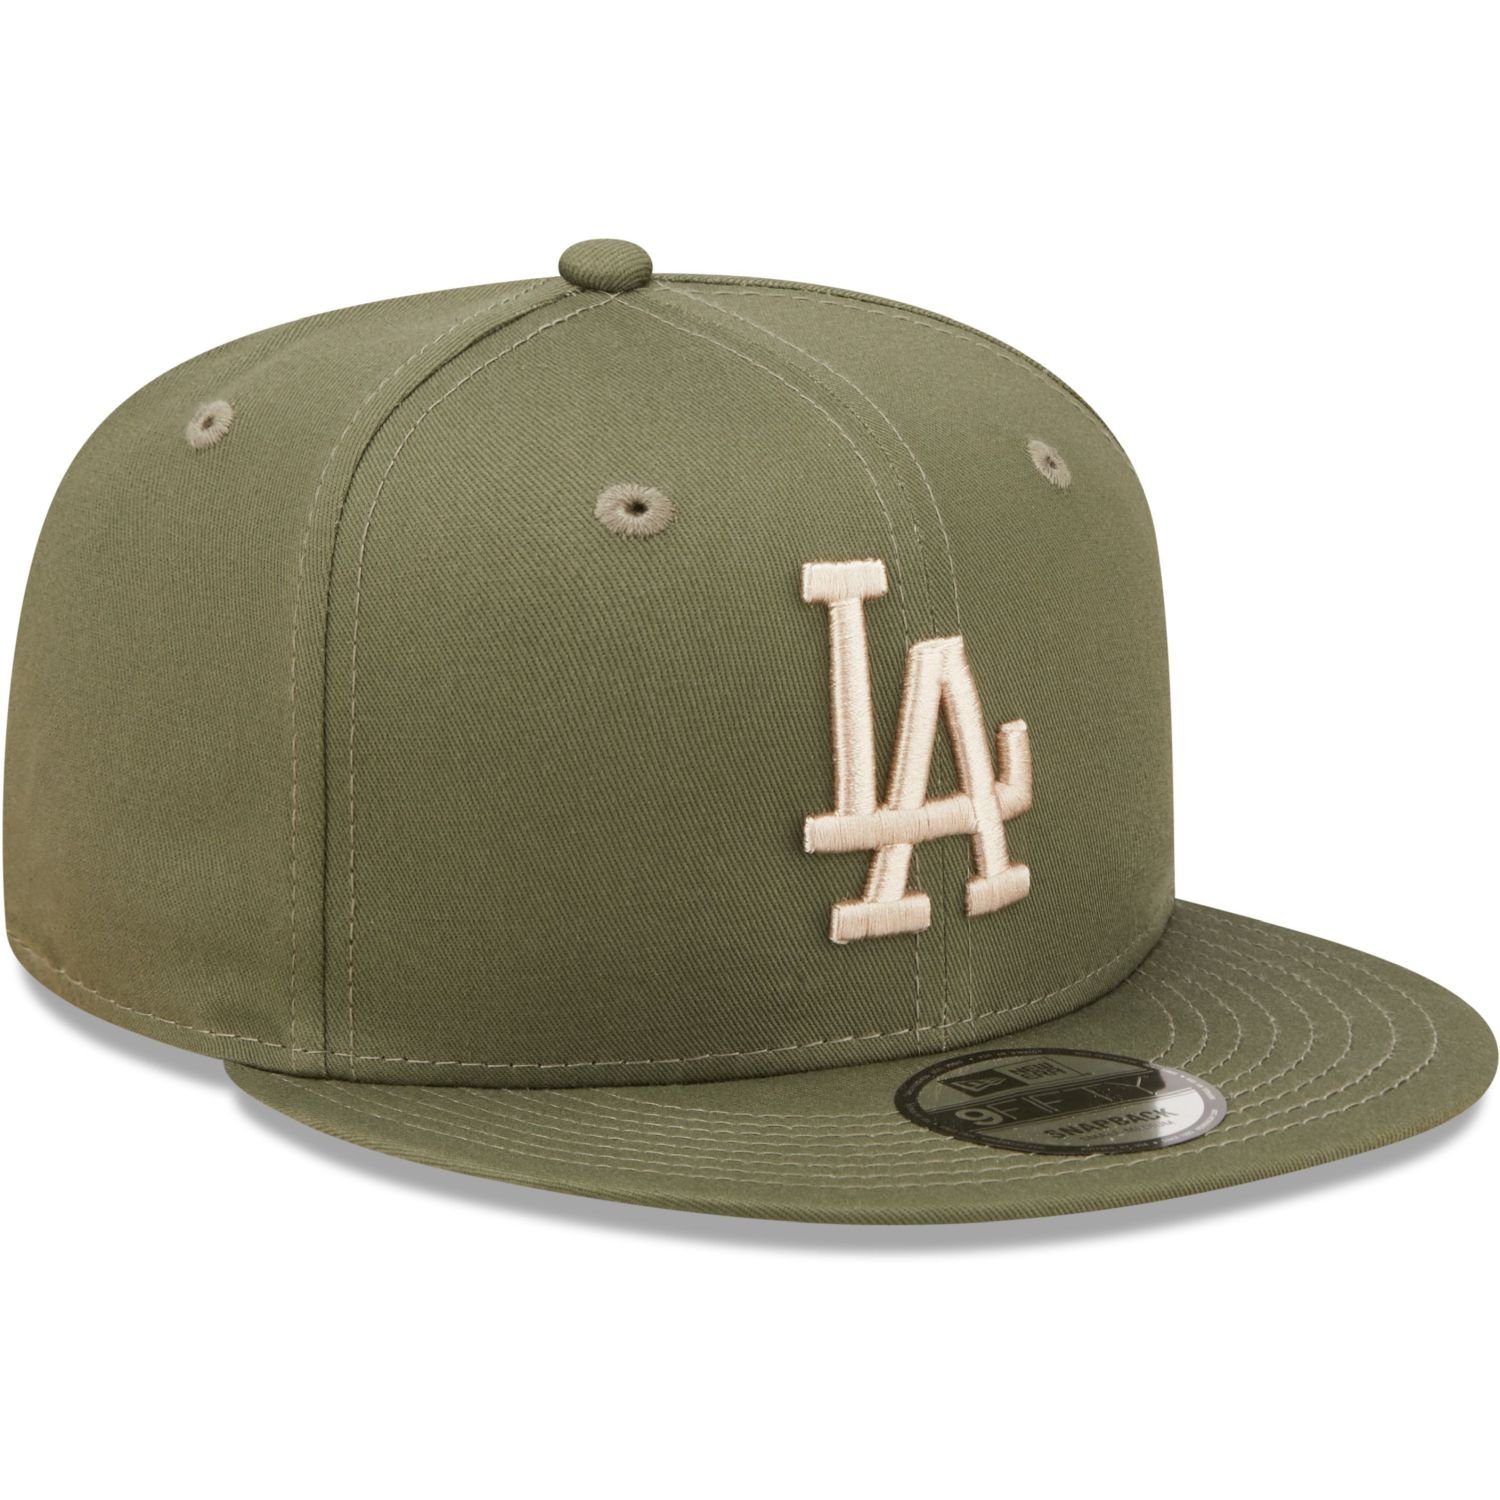 Cap New Dodgers 9Fifty Era Angeles Los Snapback